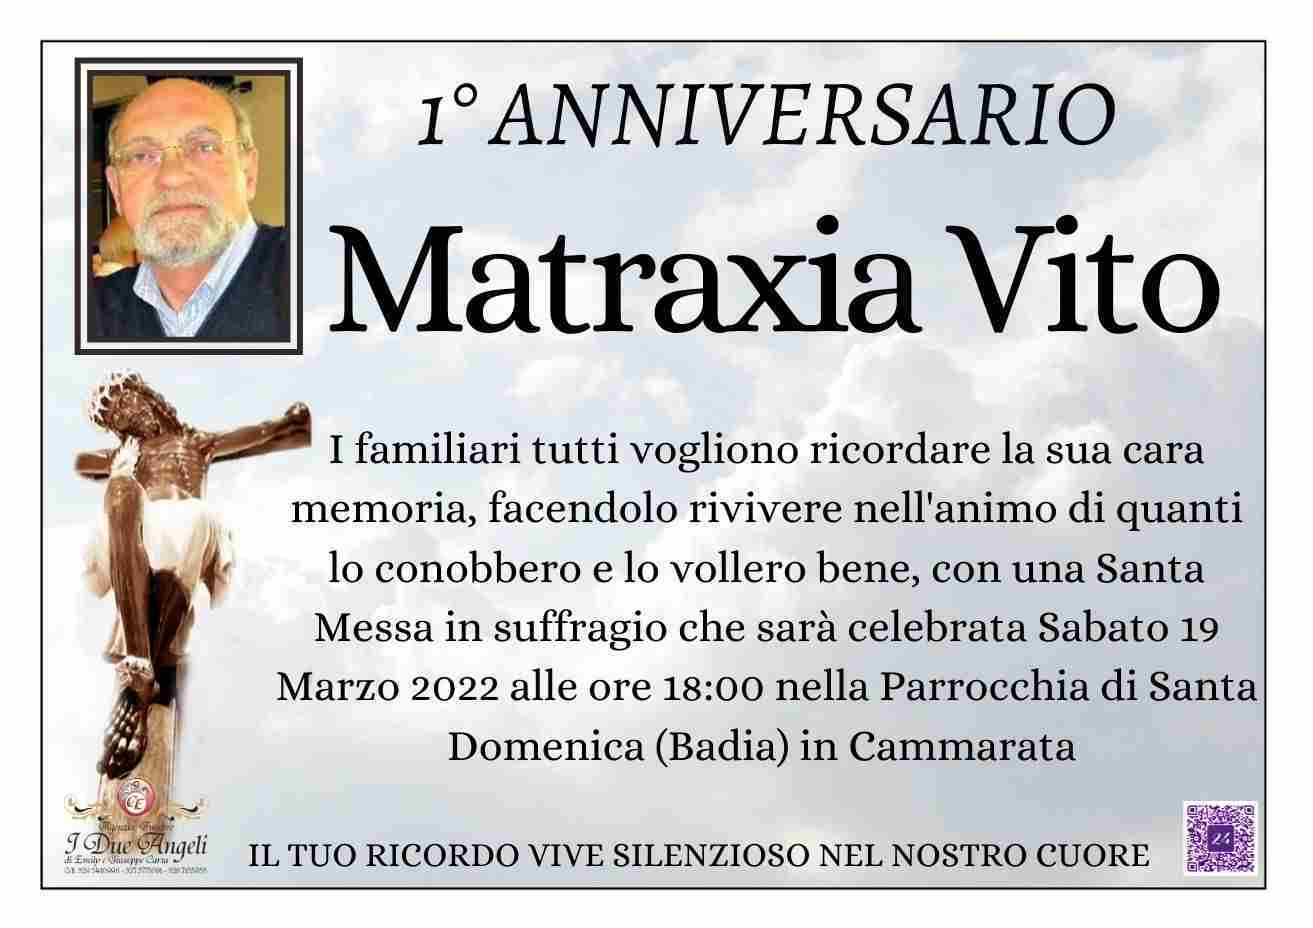 Vito Matraxia